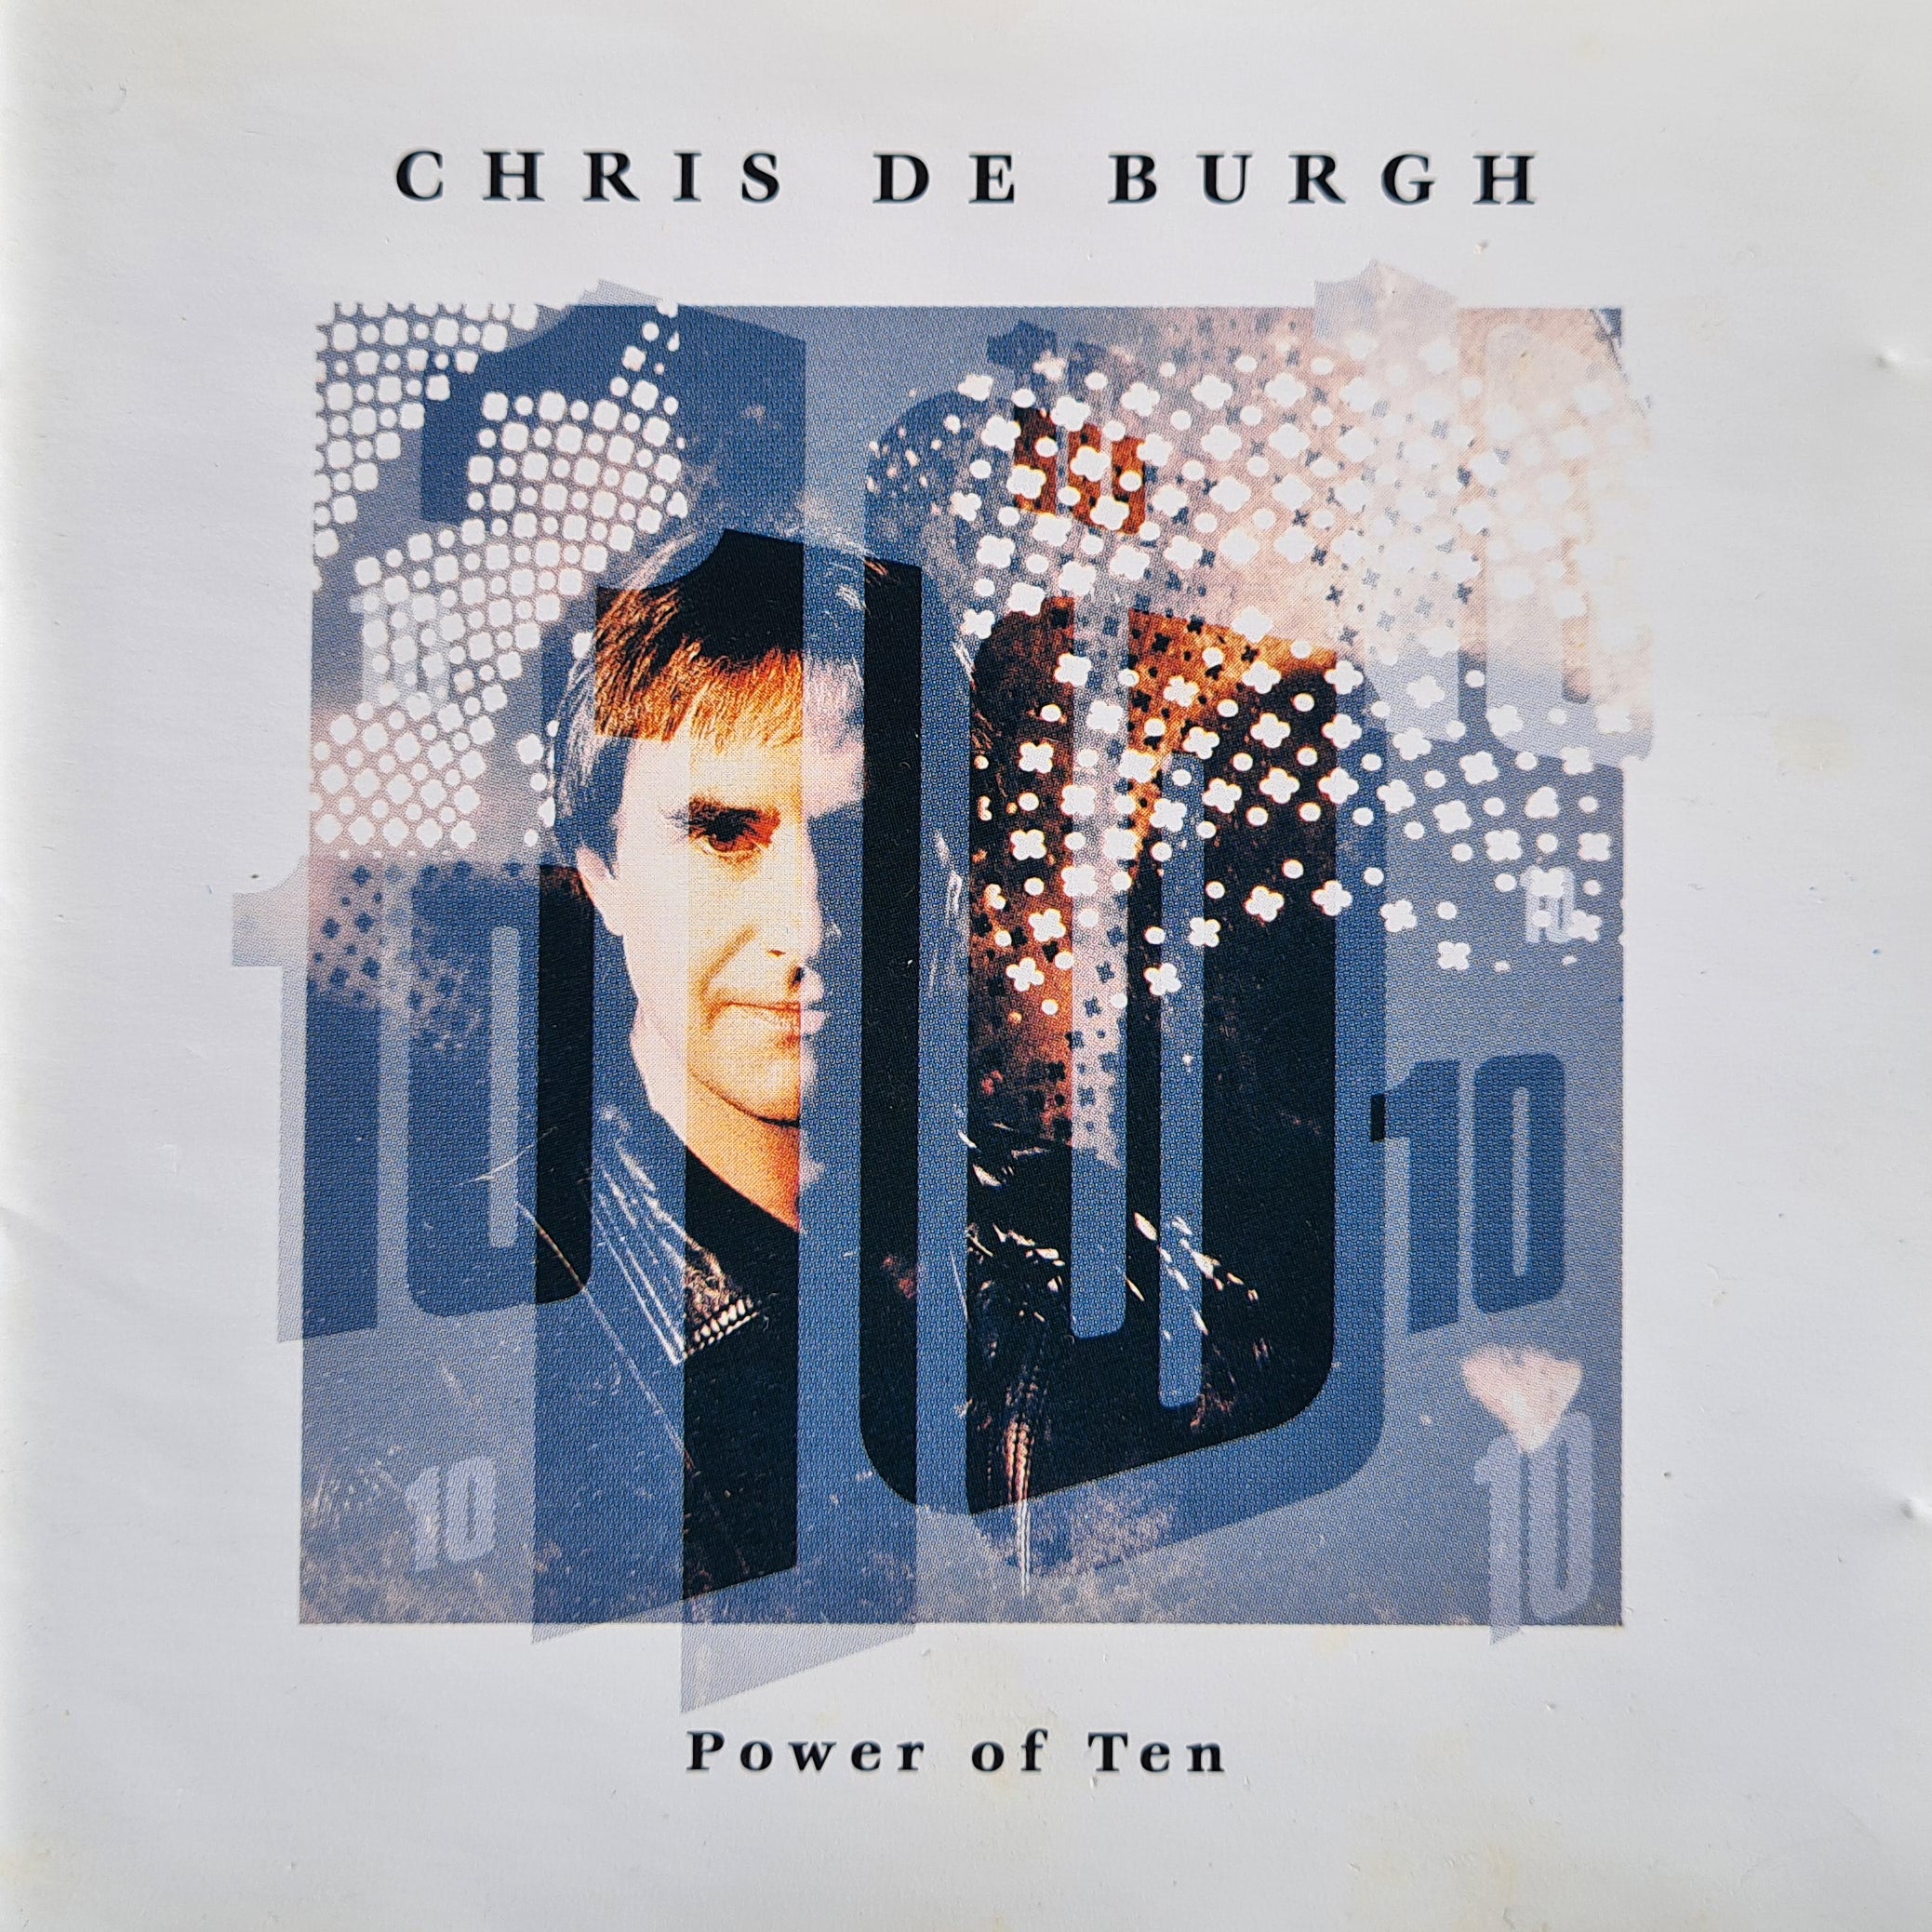 Chris de Burgh - Power of Ten (CD)